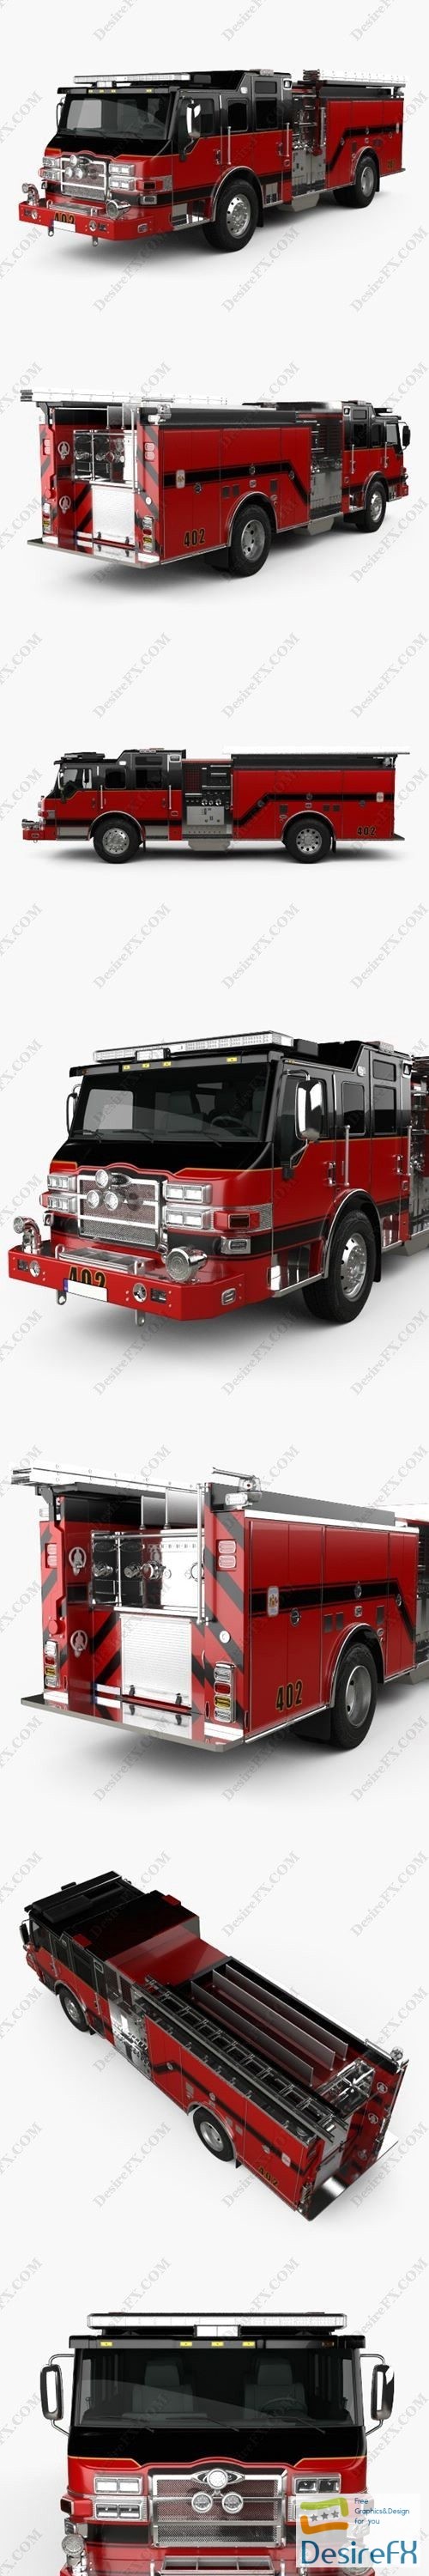 Pierce E402 Pumper Fire Truck 2014 3D Model